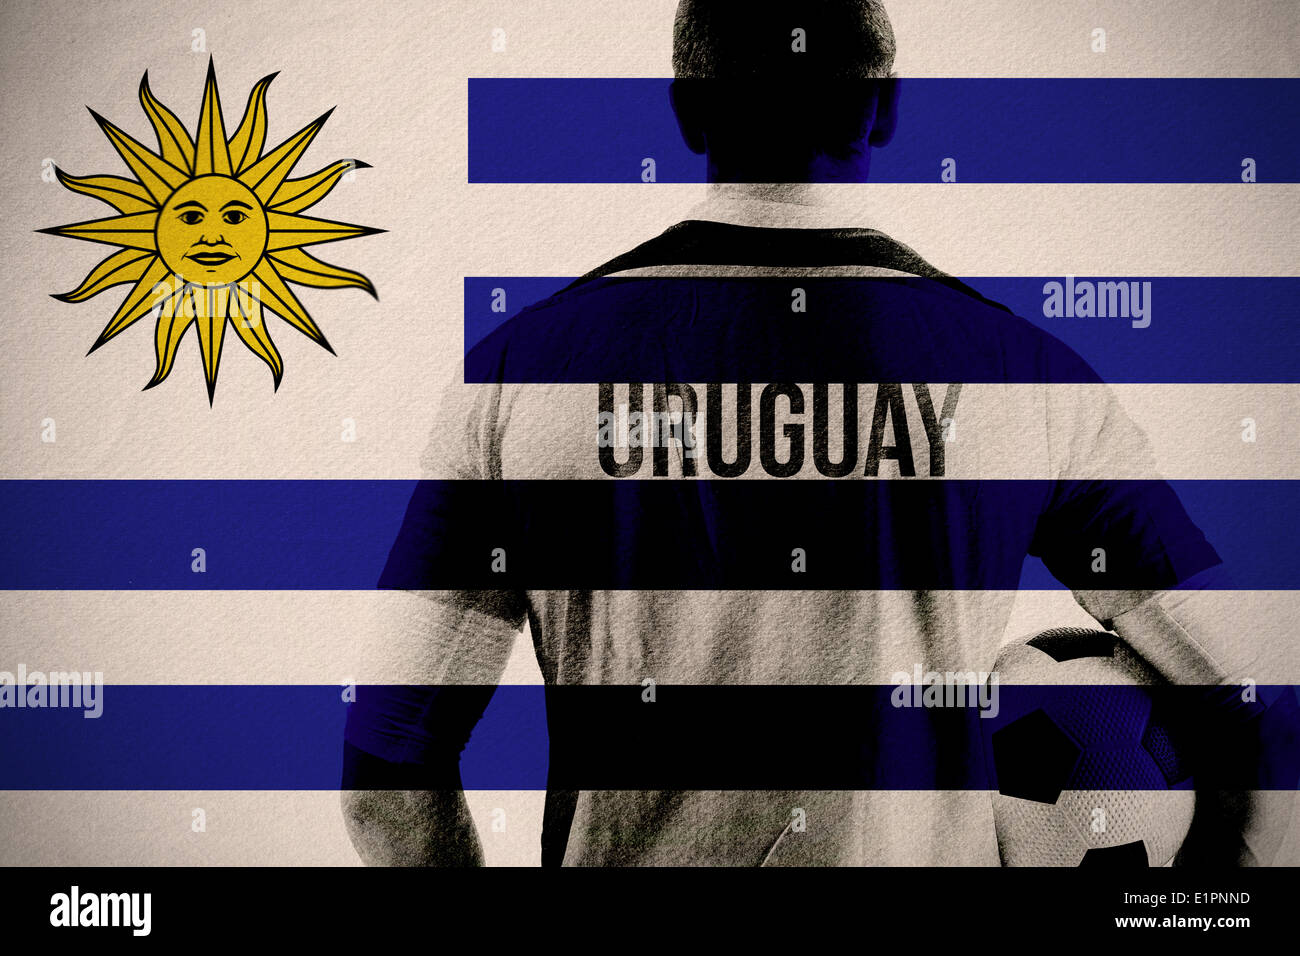 Immagine composita di uruguay football giocatore in possesso palla Foto Stock